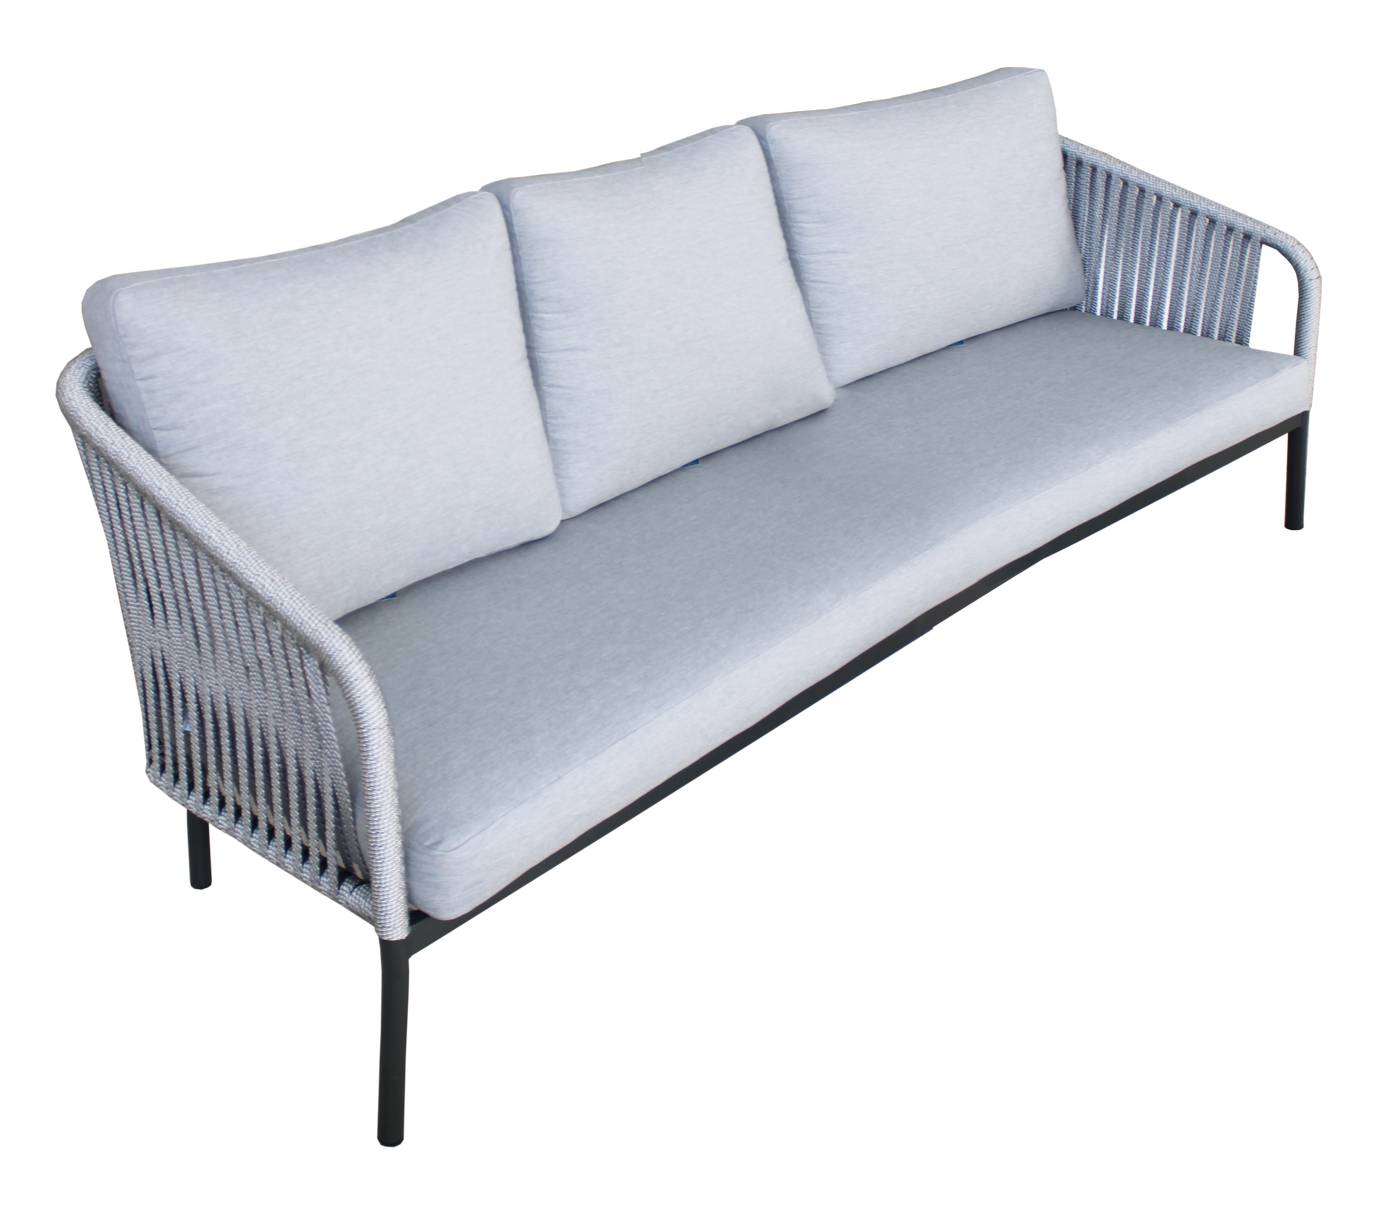 Sofá relax 3 plazas con cojines desenfundables. Estructura de aluminio color antracita recubierta de cuerda color gris.